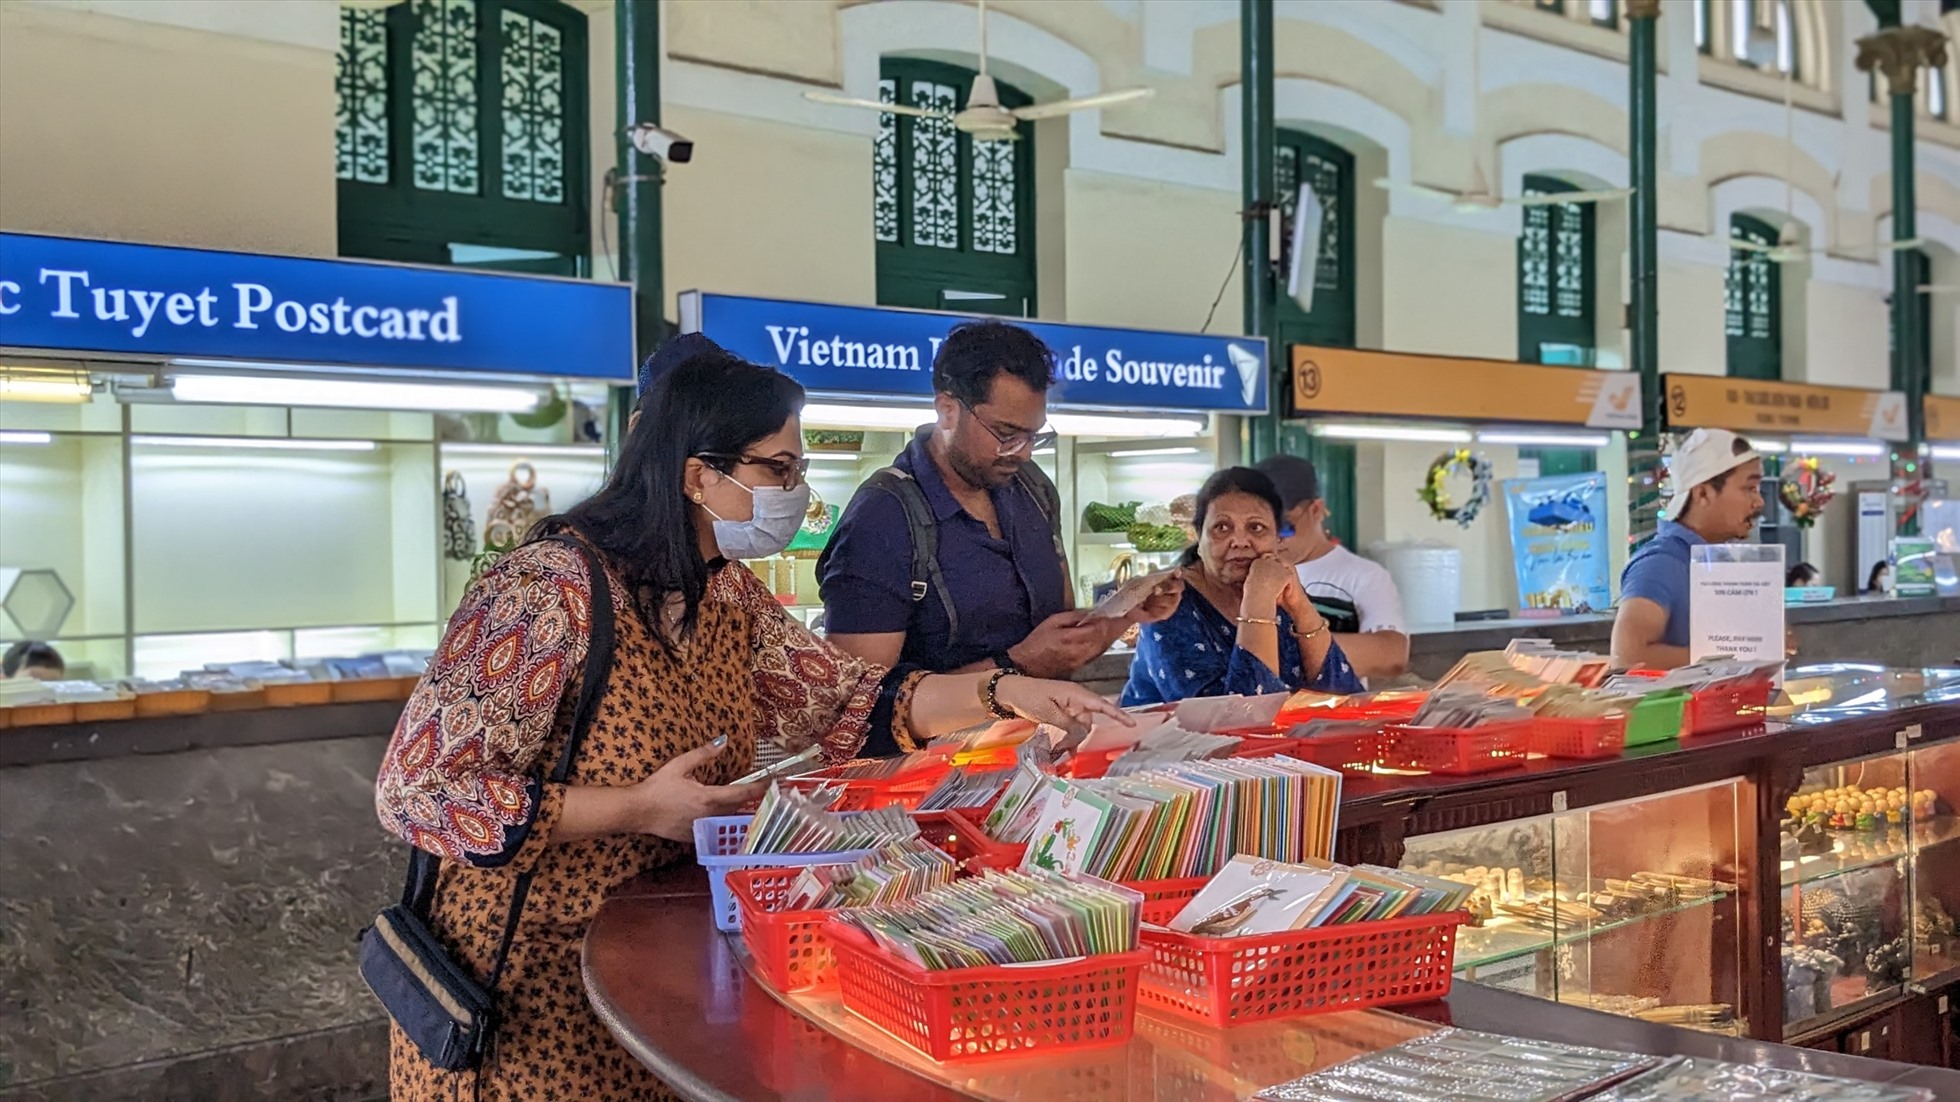 Dọc hai bên hành lang tòa nhà được bày bán hàng nghìn sản phẩm đồ lưu niệm, bưu ảnh về đất nước con người Việt Nam cũng như về Sài Gòn nói riêng để phục vụ khách du lịch.